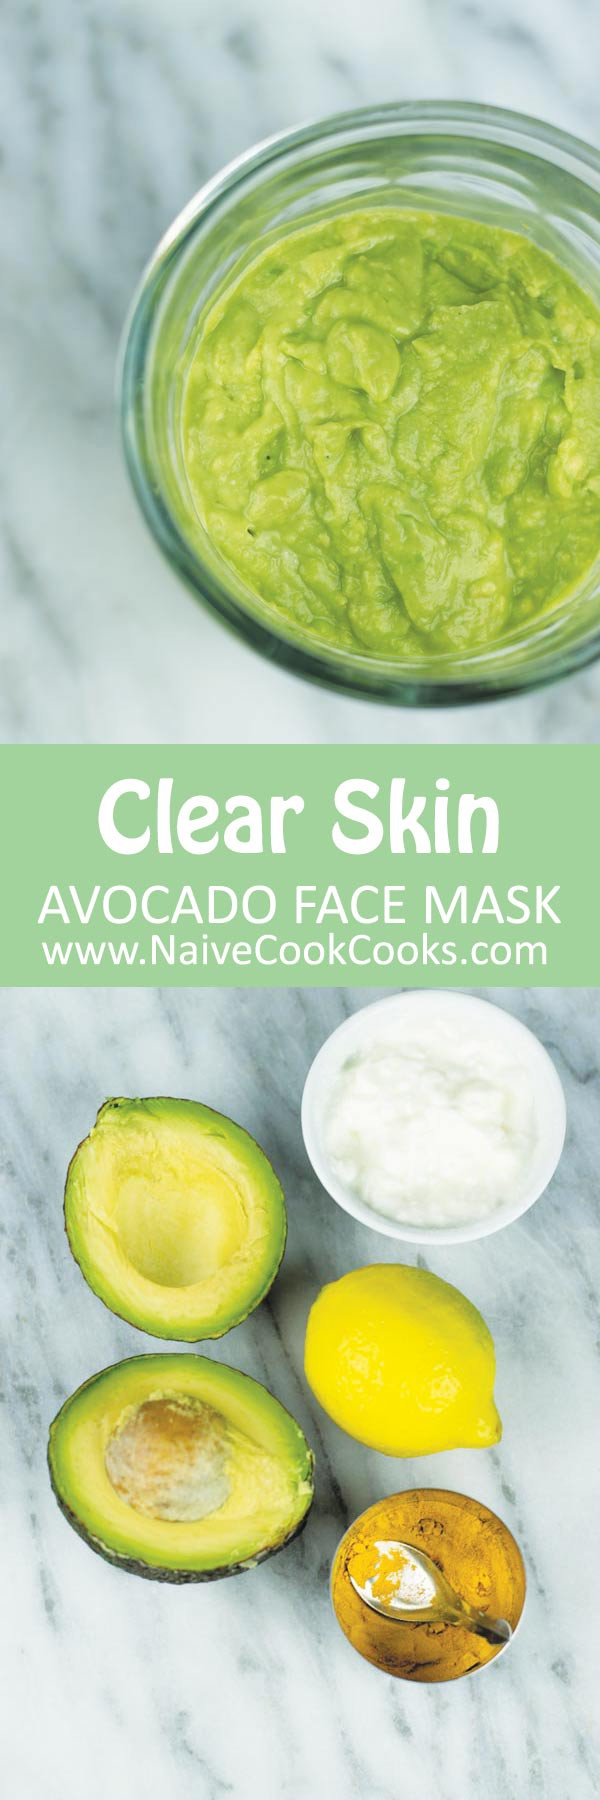 Avocado Mask DIY
 Avocado Face Mask